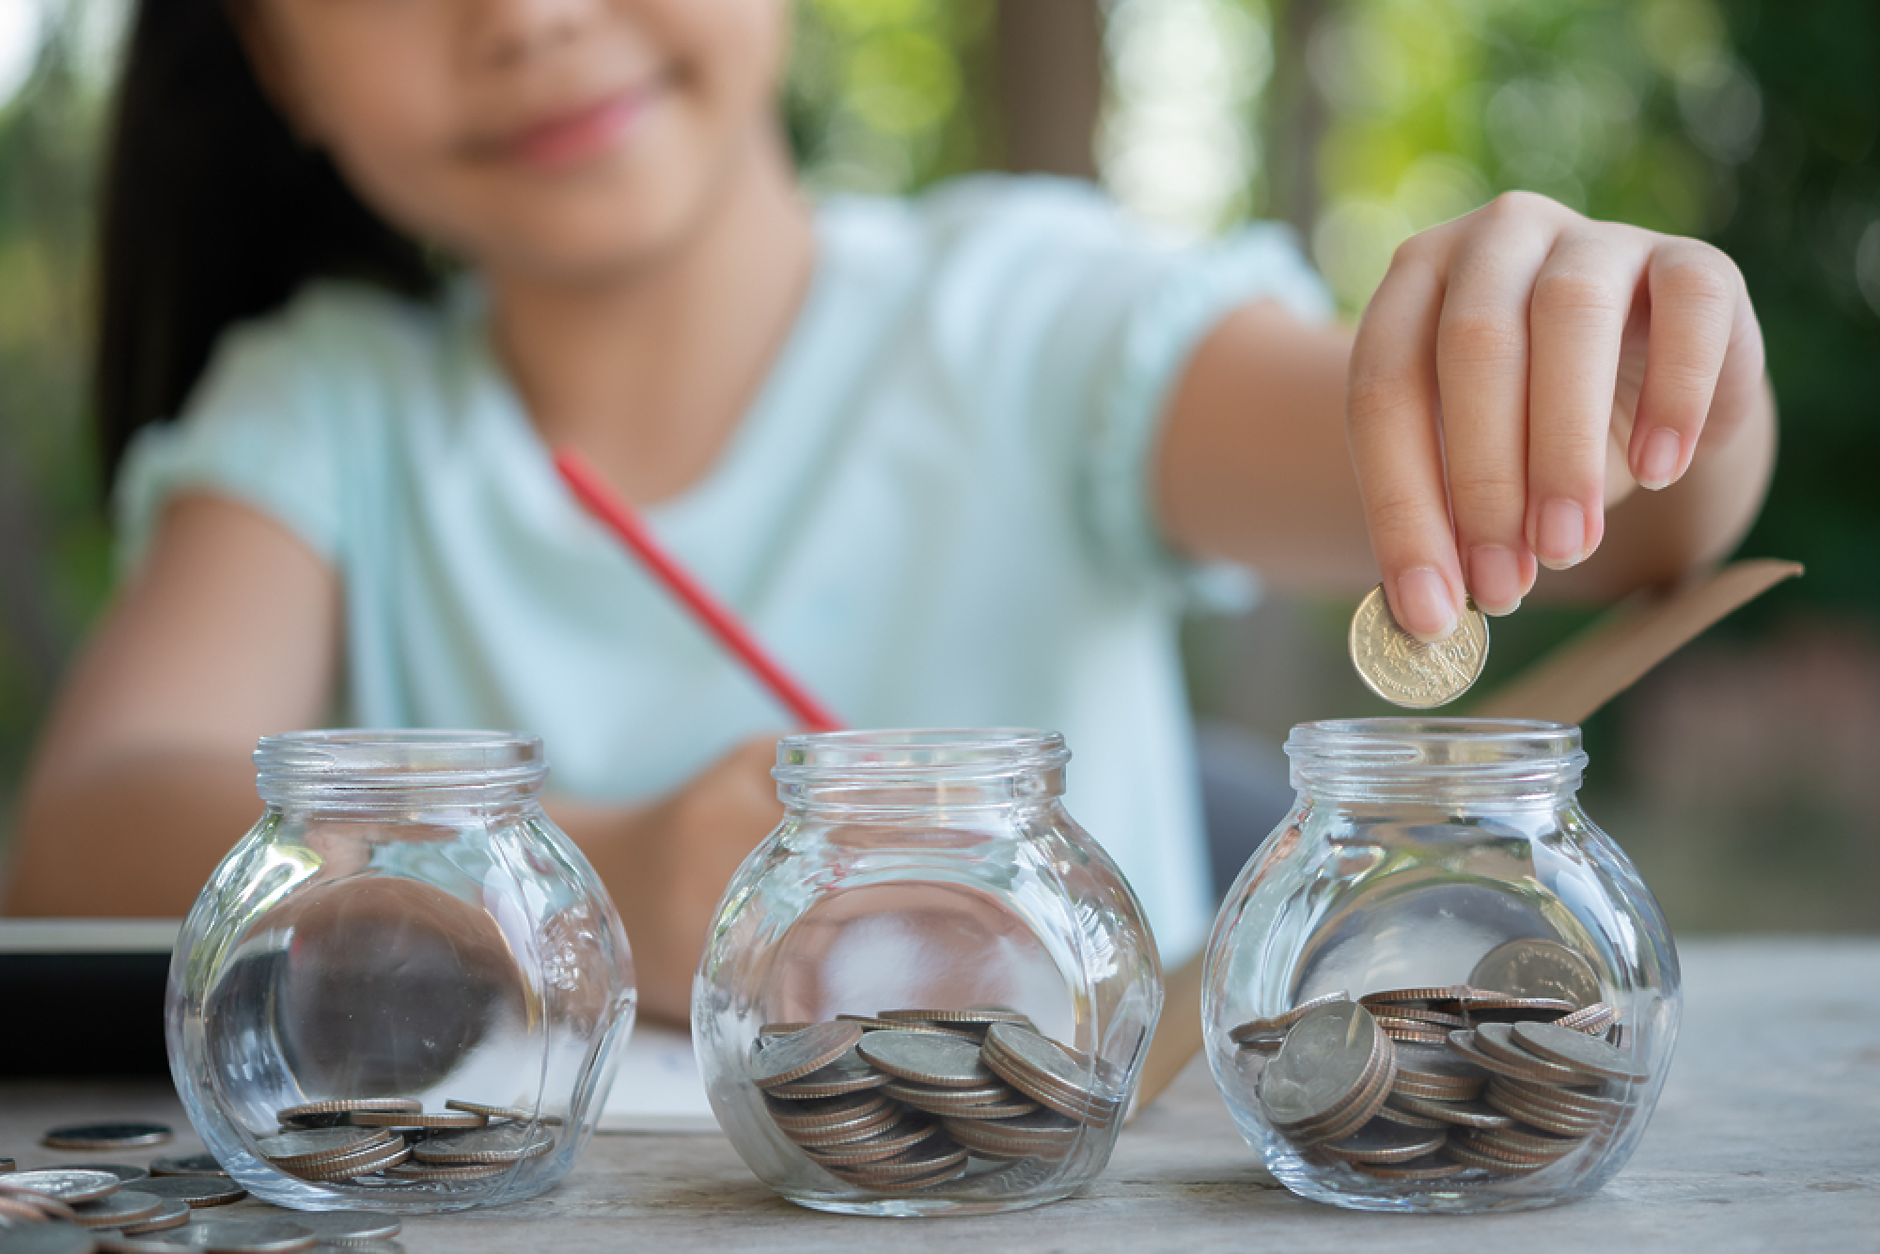 От подкаста на Новите родители: Защо е важно децата да имат познания относно парите